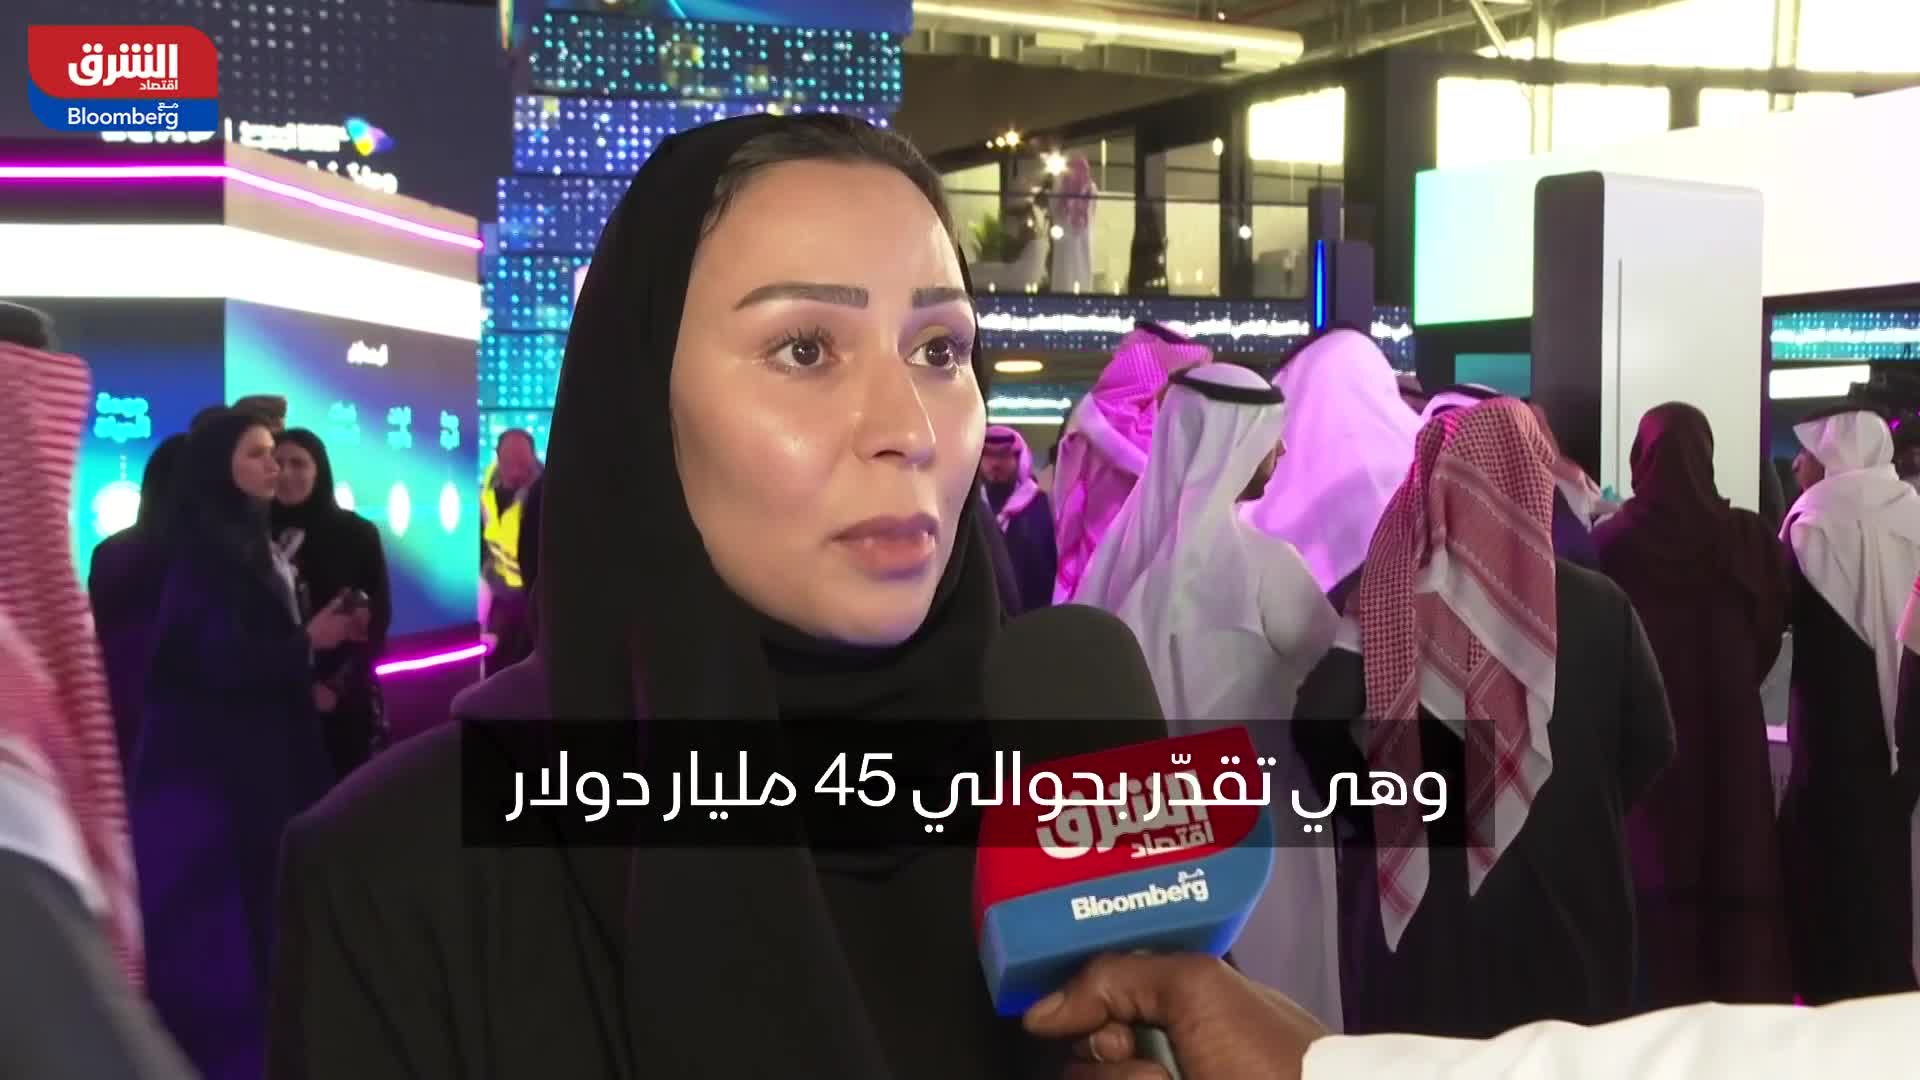 دانية ركوبي: سوق التكنولوجيا السعودية تقدر بحوالي 45 مليار دولار